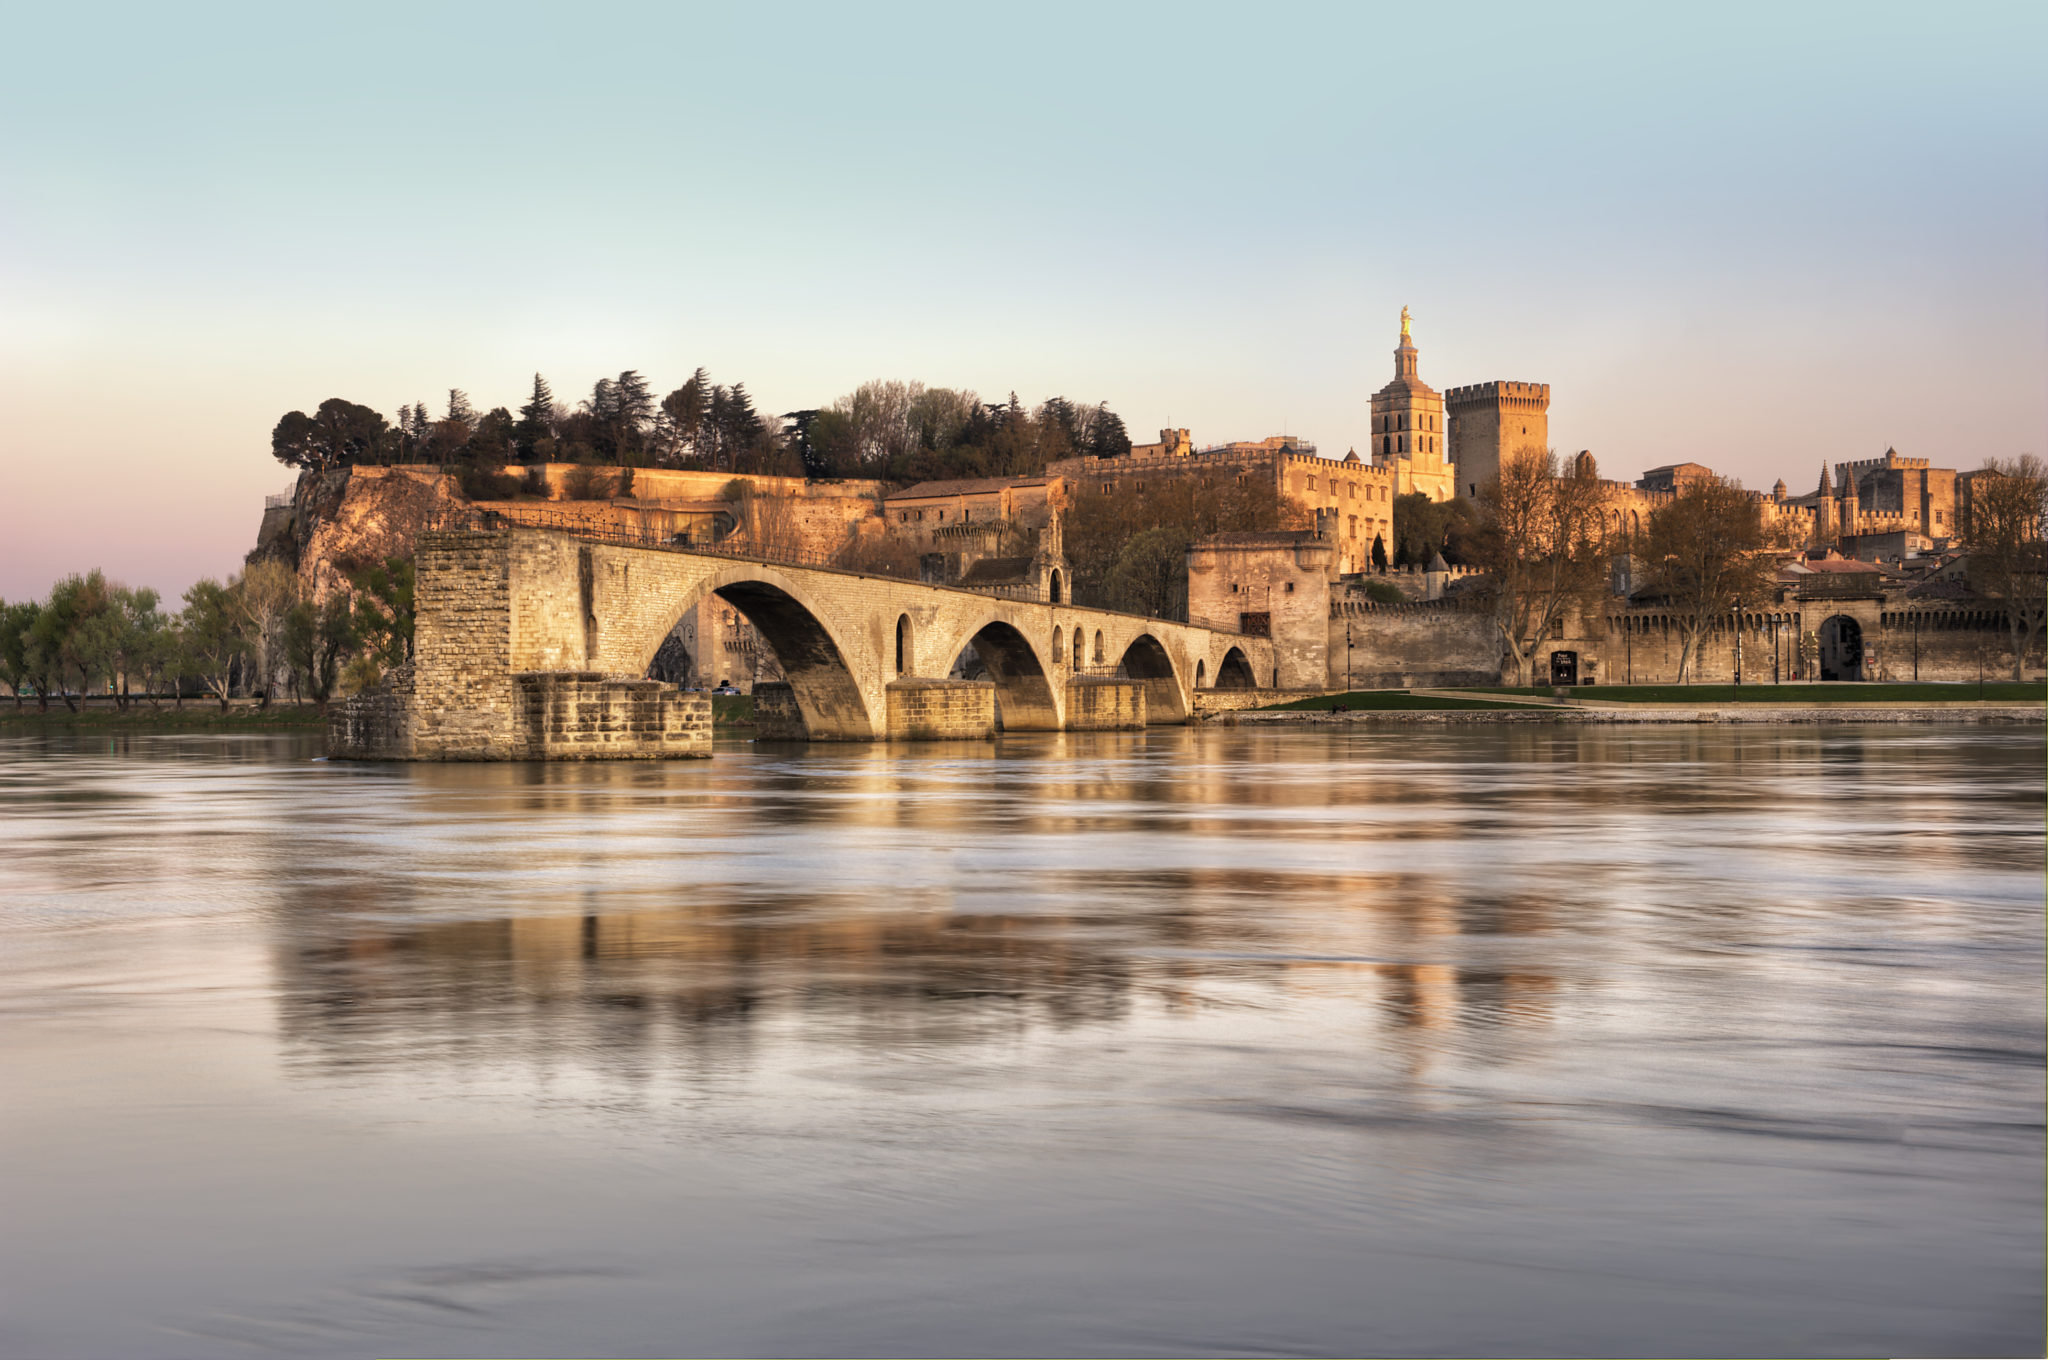 foto van 4 bogen van een brug in de rivier de Rhône, de brug stopt midden in het water en op de achtergrond ligt een historisch stadje met oude torens en stadsmuren